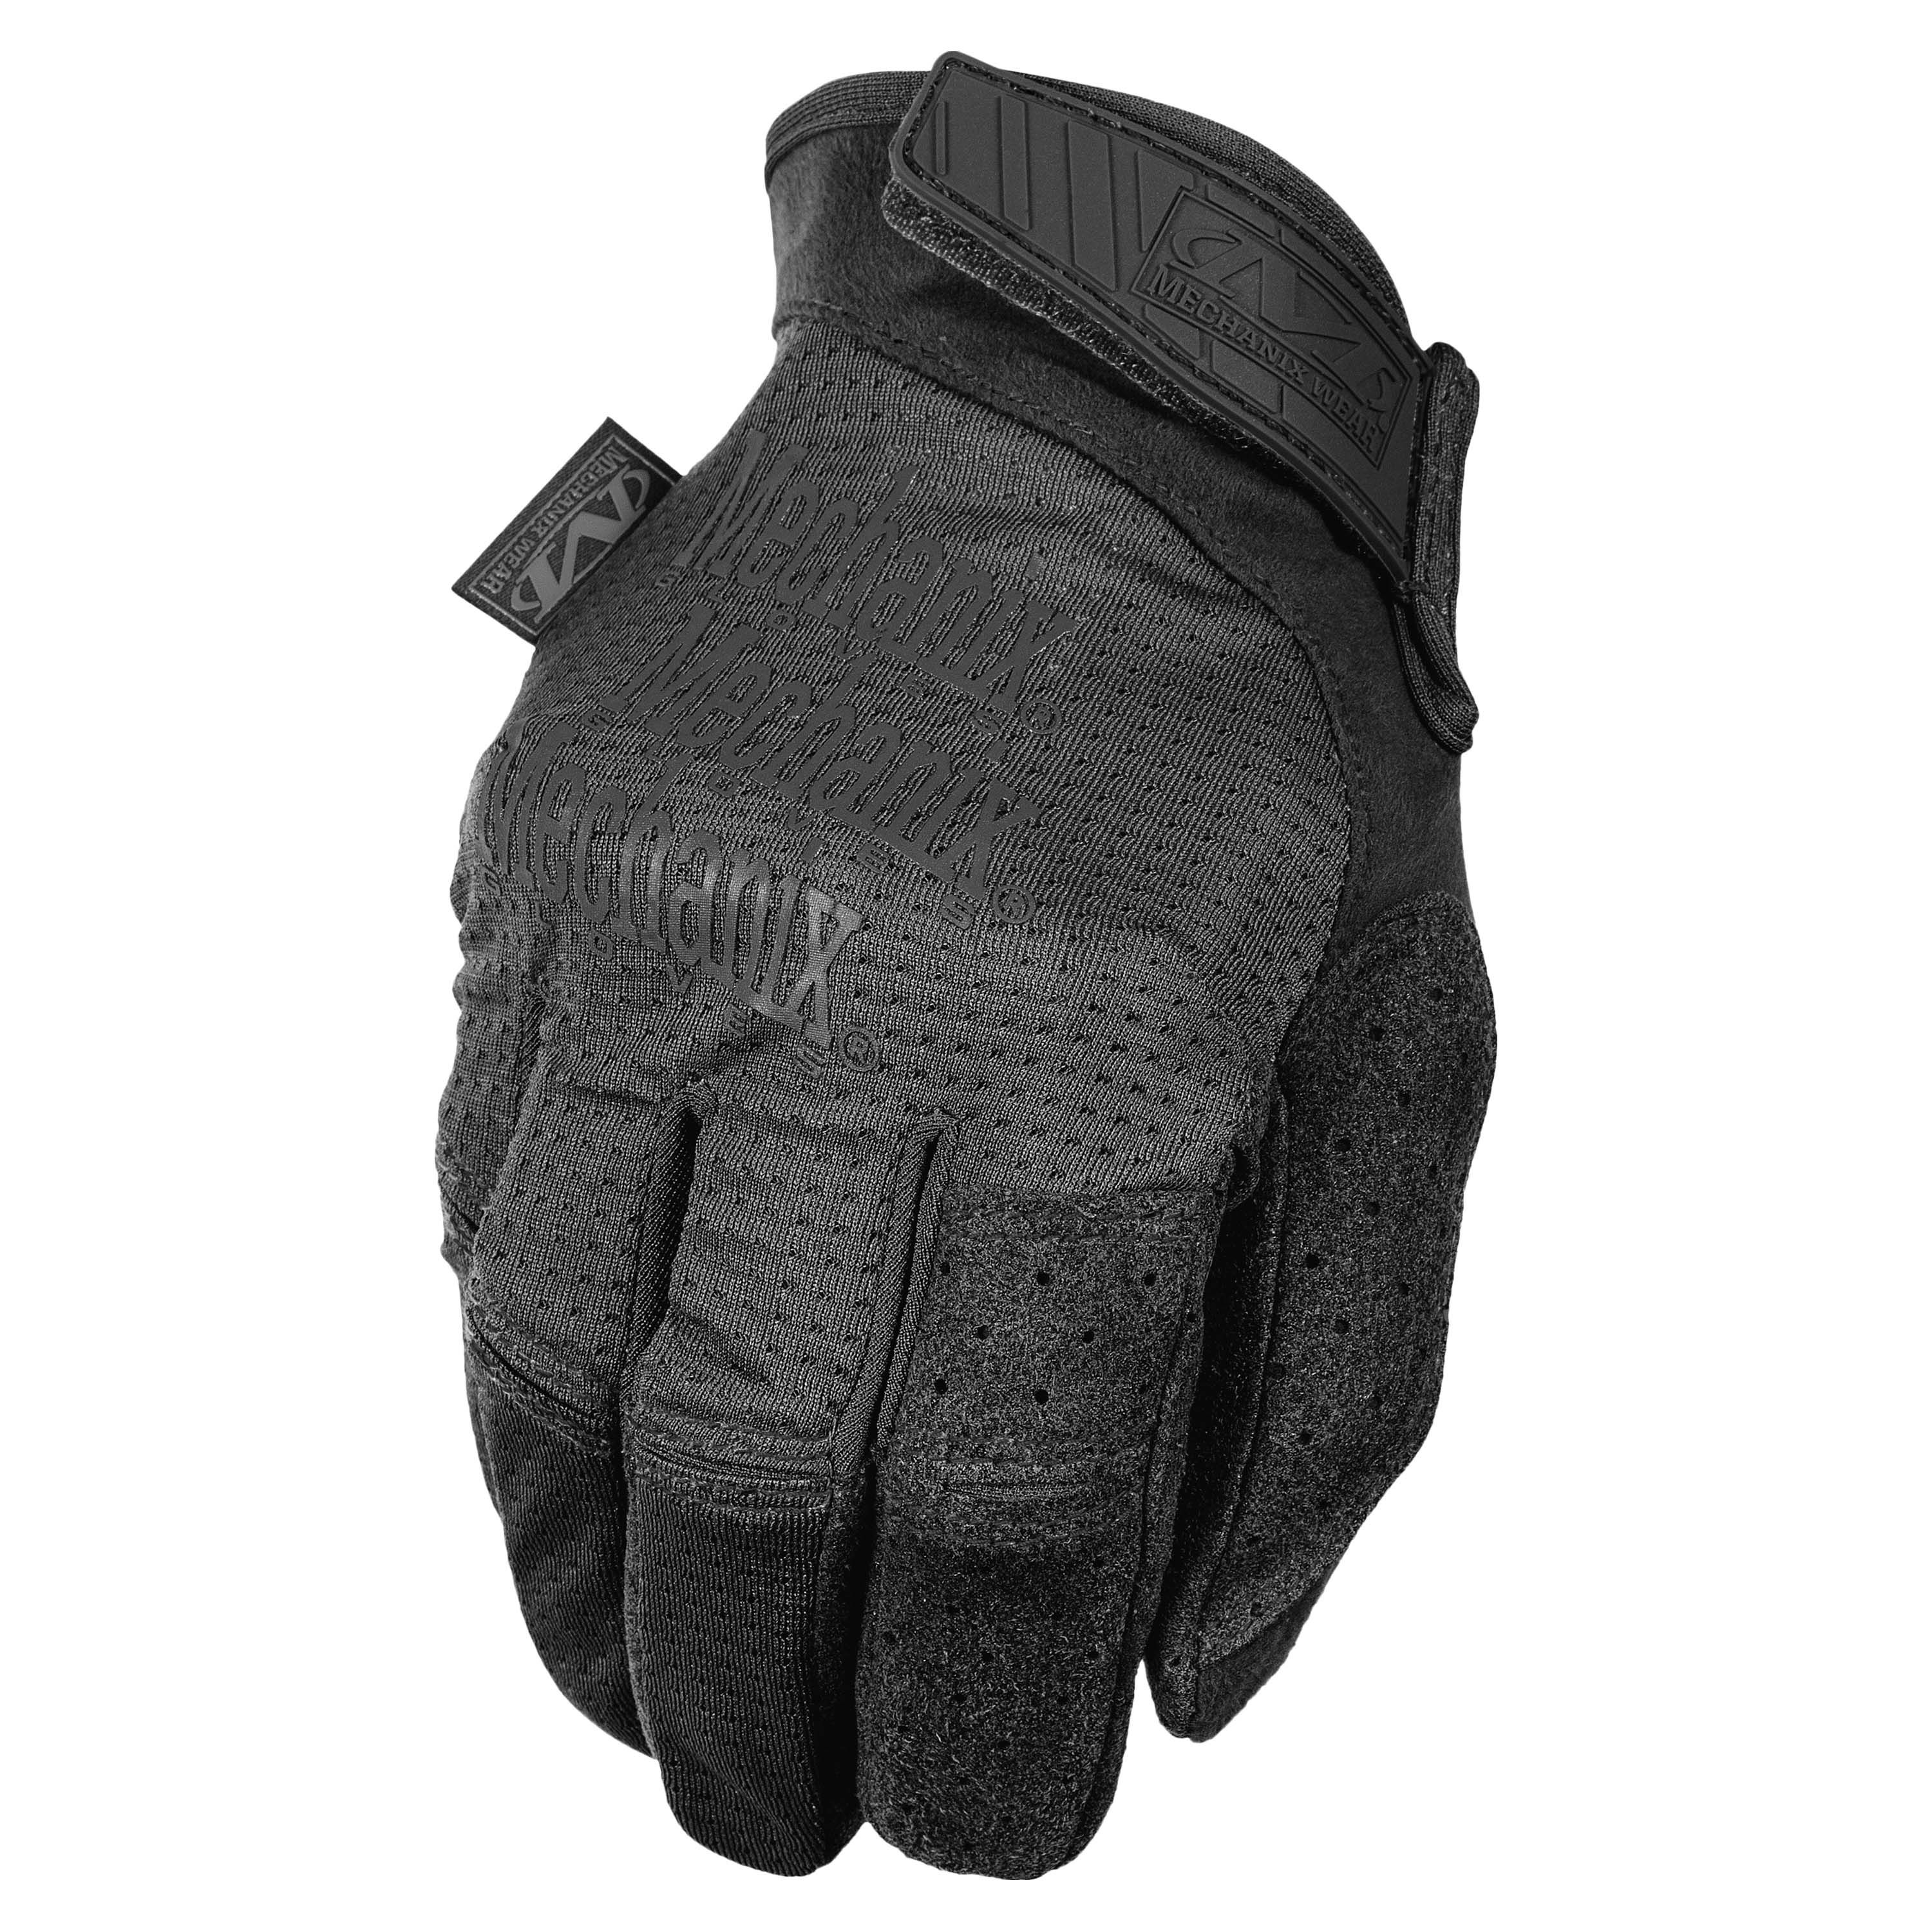 Wear gloves. Mechanix Vent перчатки. Перчатки Mechanix Specialty Hi-dexterity 0.5 Covert (MSD-55). Mechanix Wear Specialty 0.5mm. Mechanix Wear 0.5mm Covert.